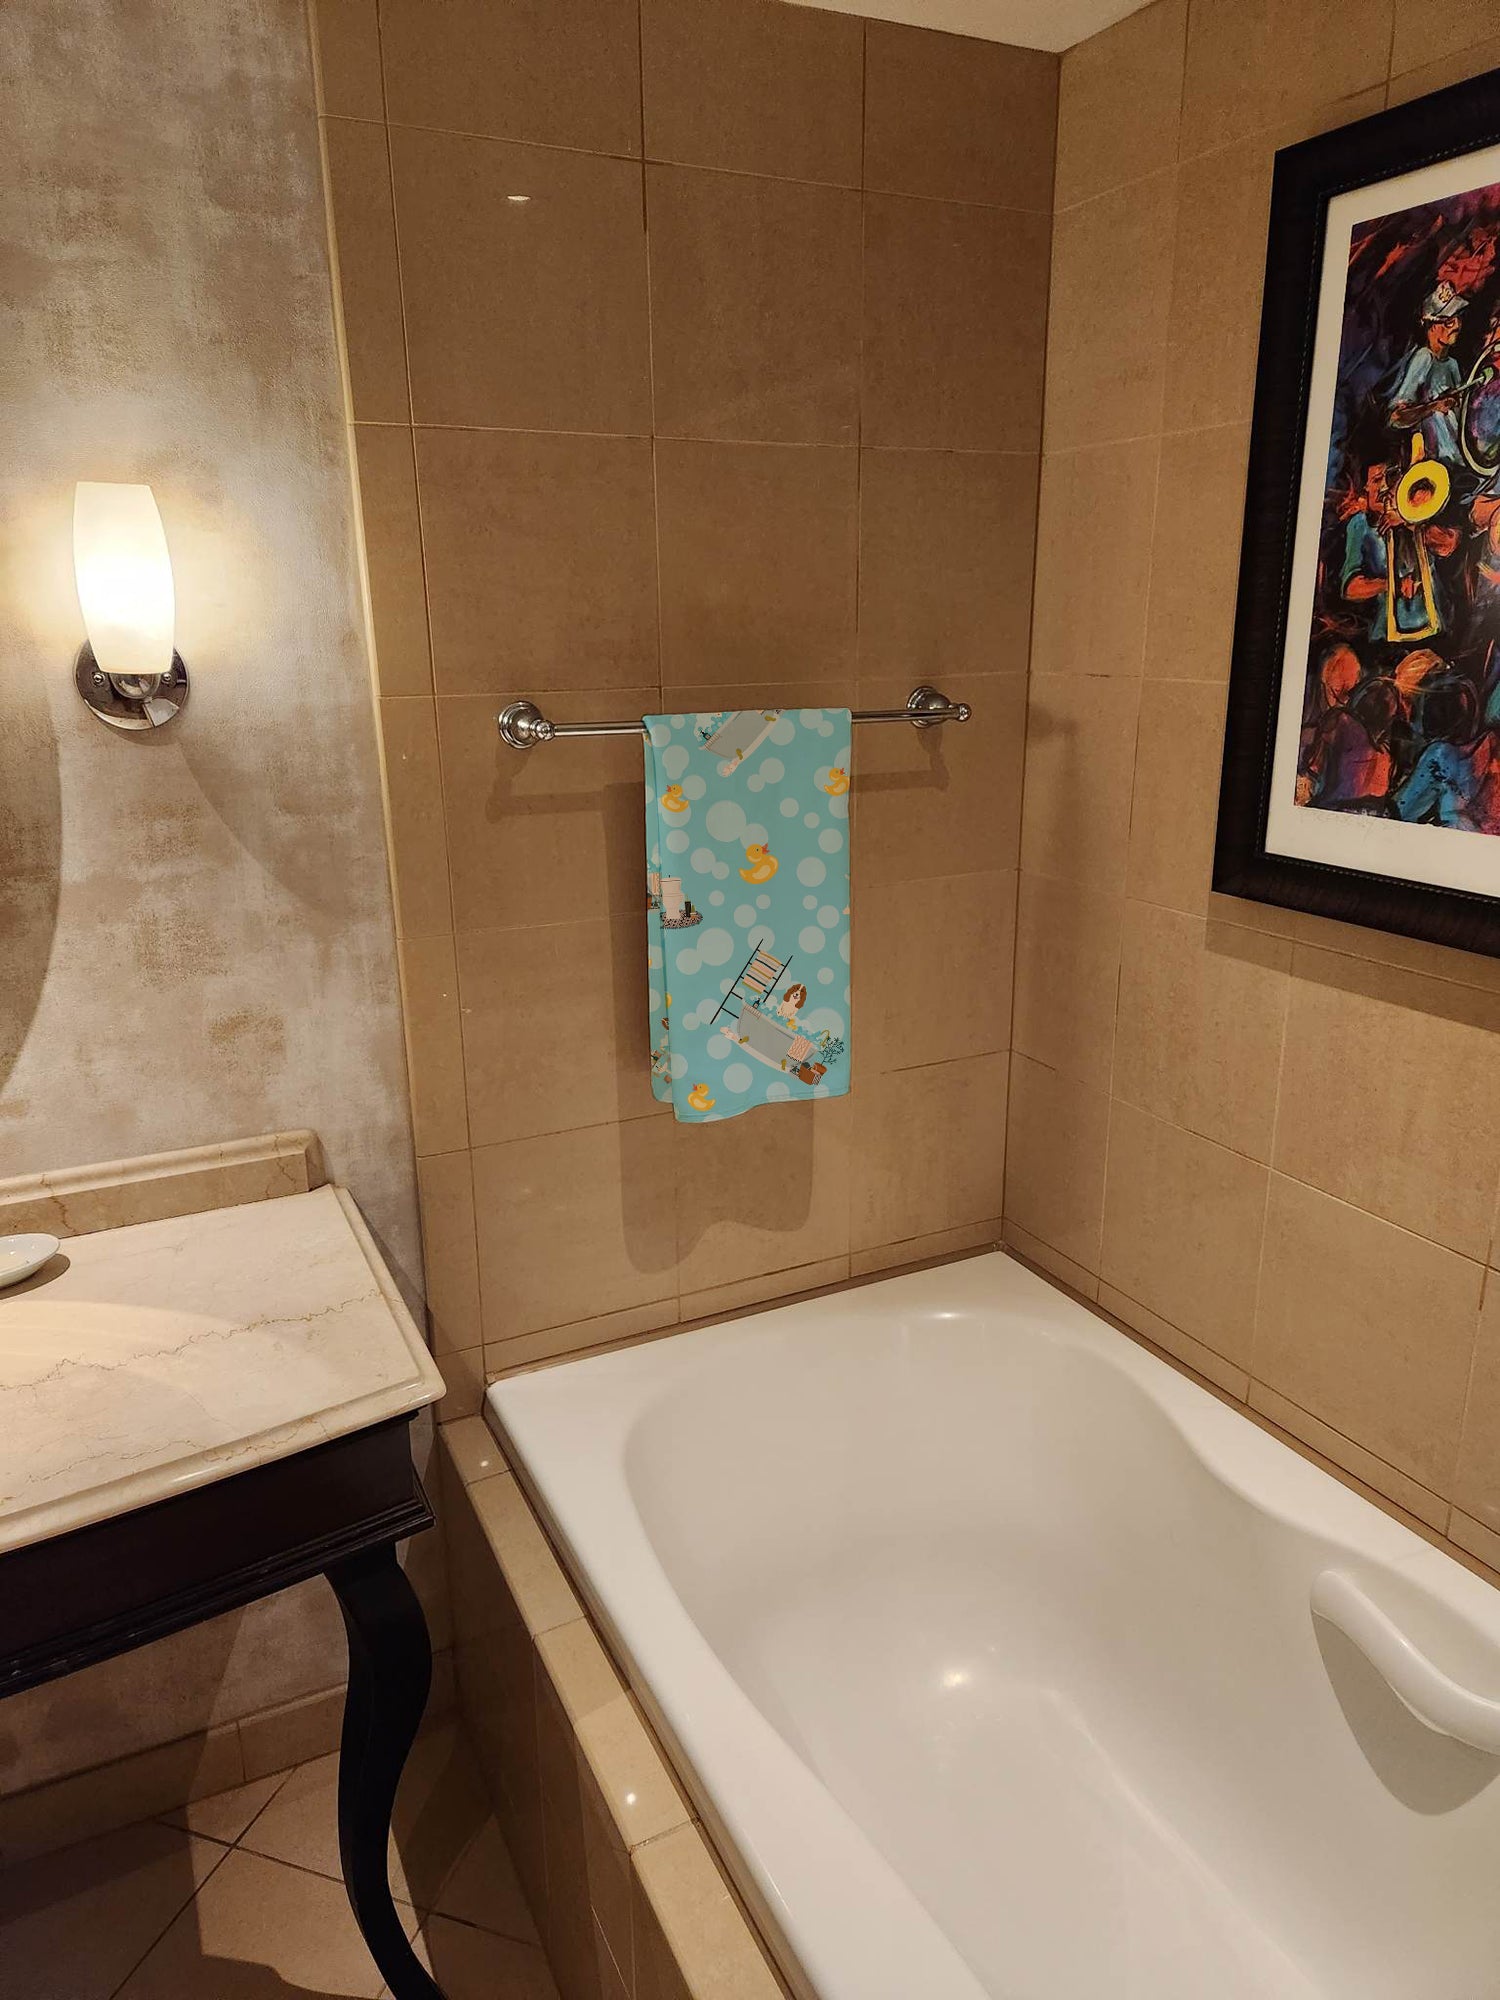 Buy this Russian Spaniel in Bathtub Bath Towel Large